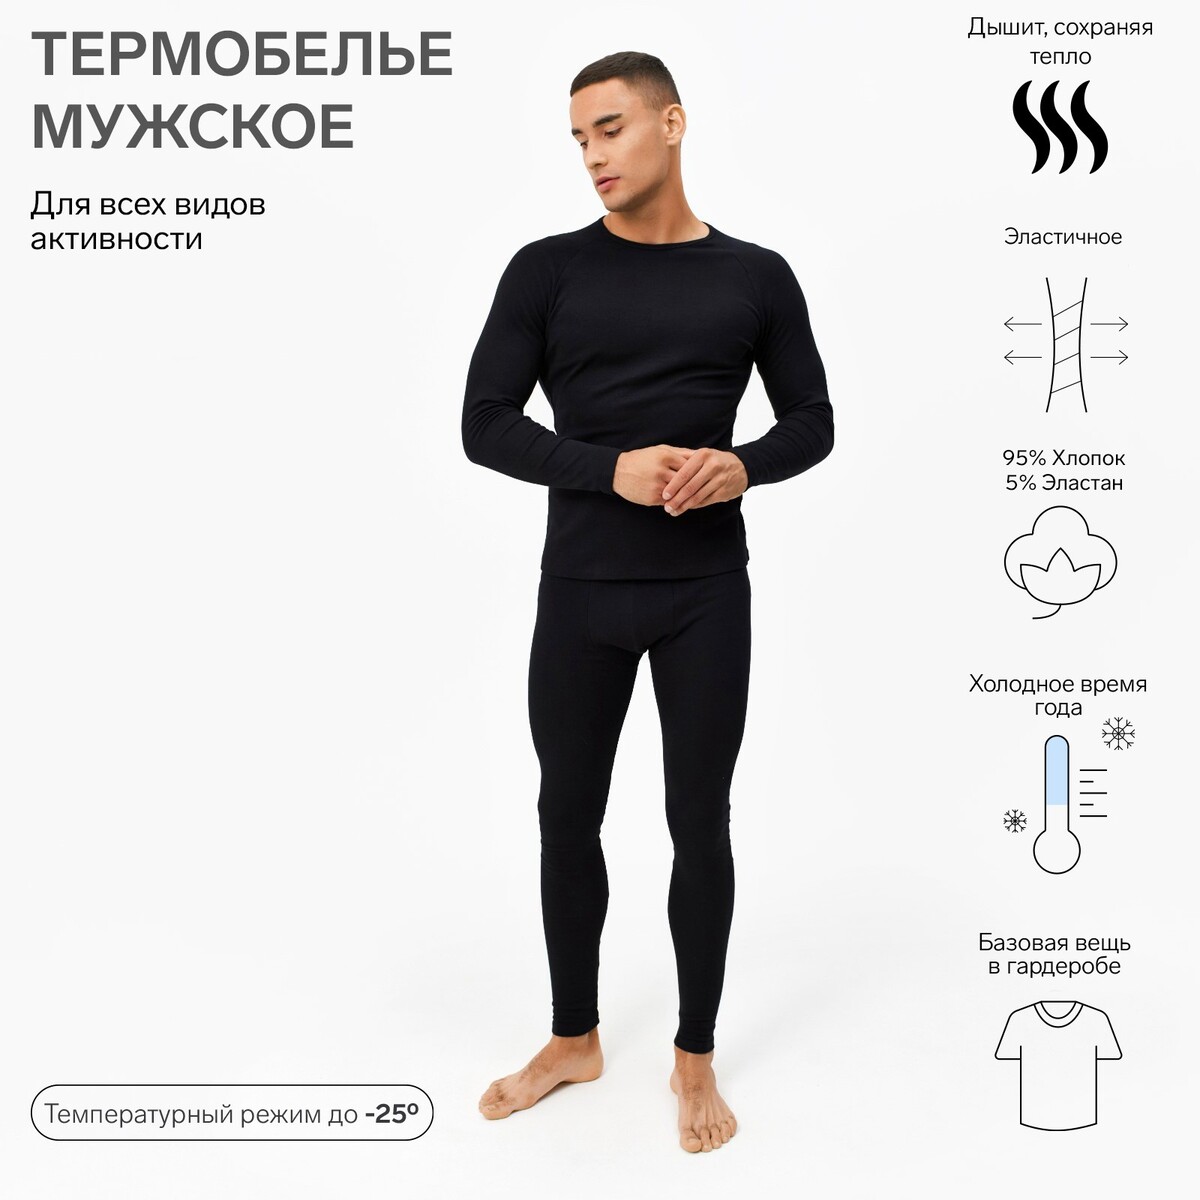 Термобелье джемпер брюки MINAKU 0675845: купить за 4070 руб в интернетмагазине с бесплатной доставкой